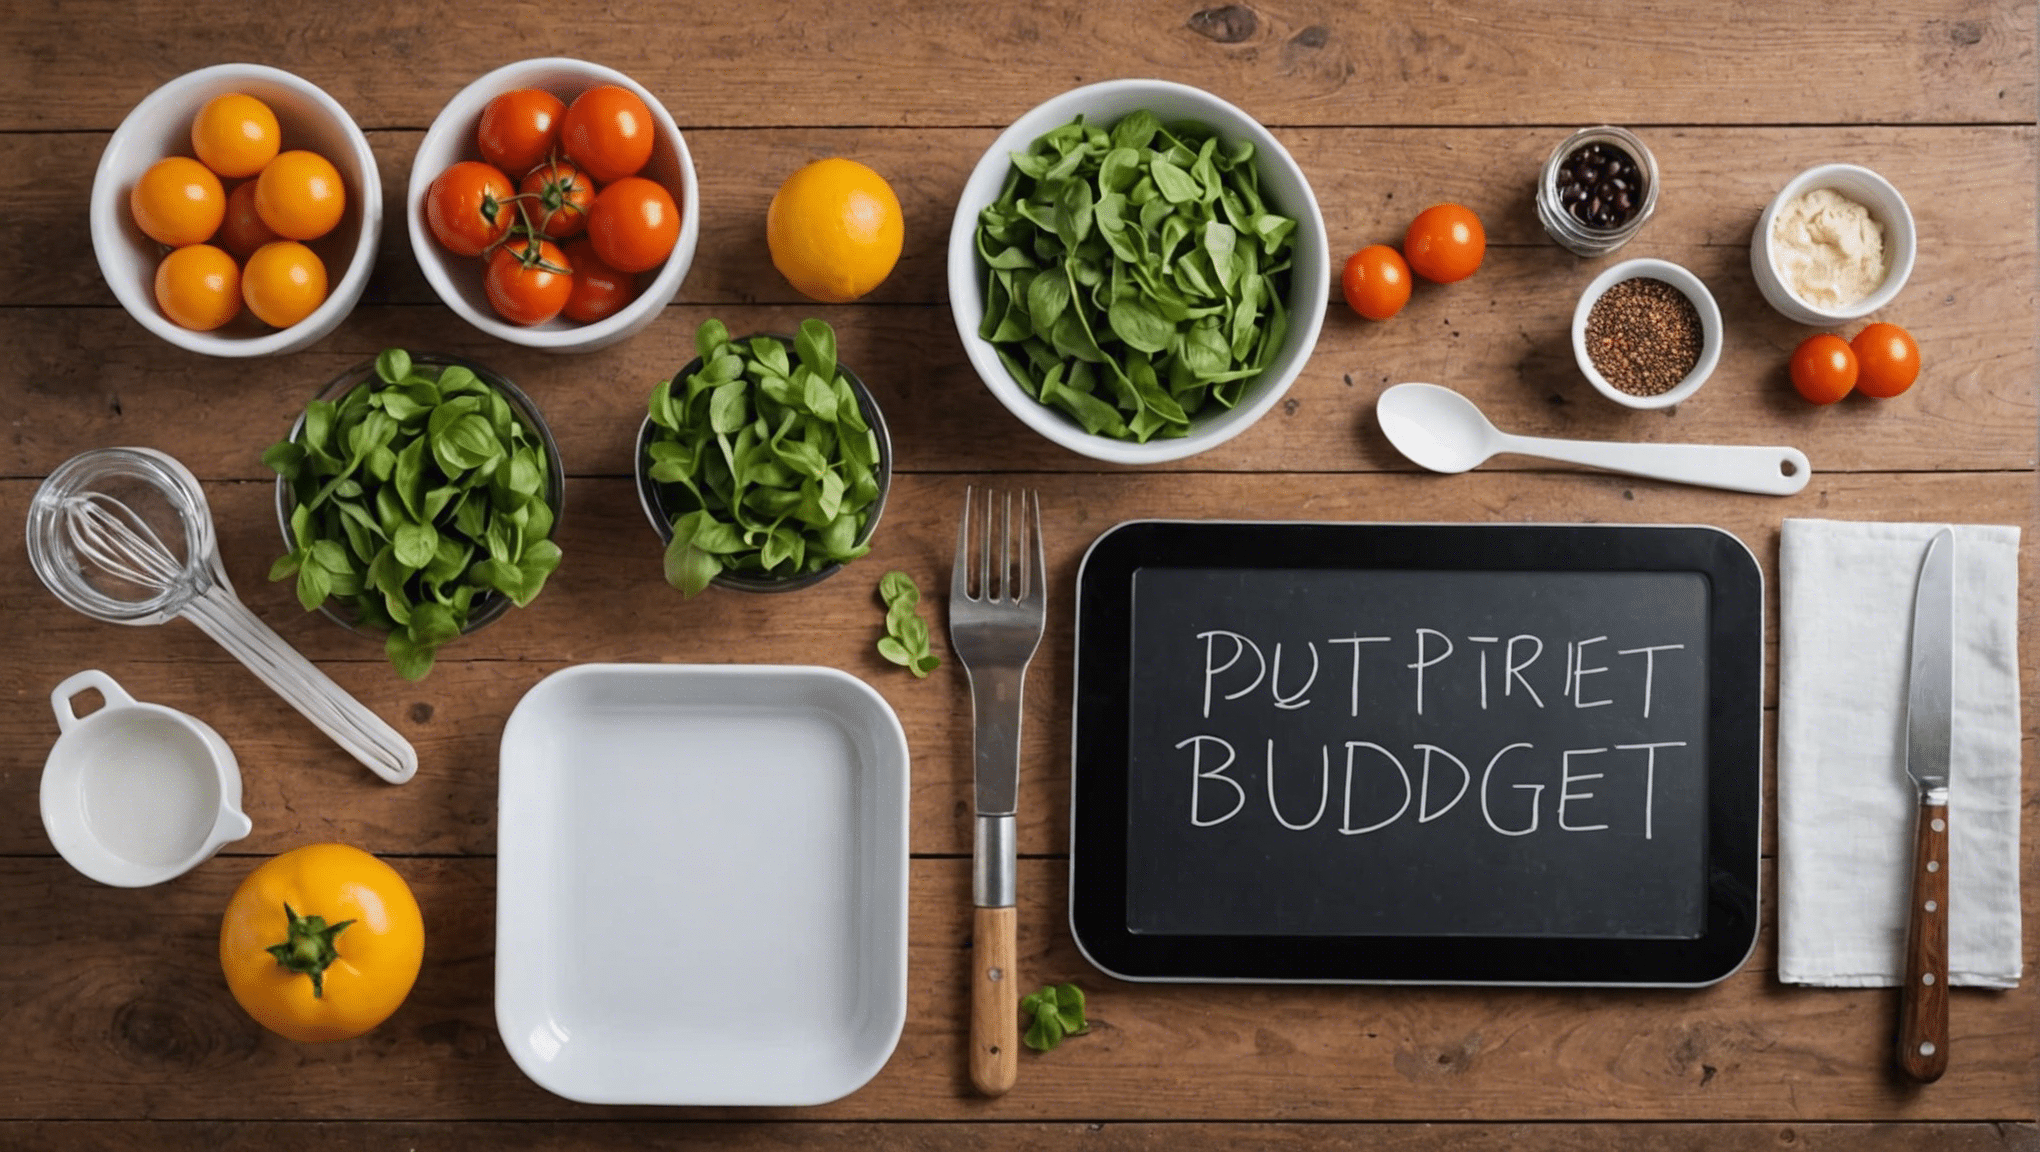 découvrez comment cuisiner de délicieux repas tout en respectant un petit budget grâce à nos astuces et recettes économiques. apprenez à maximiser votre budget tout en profitant de plats savoureux et équilibrés.